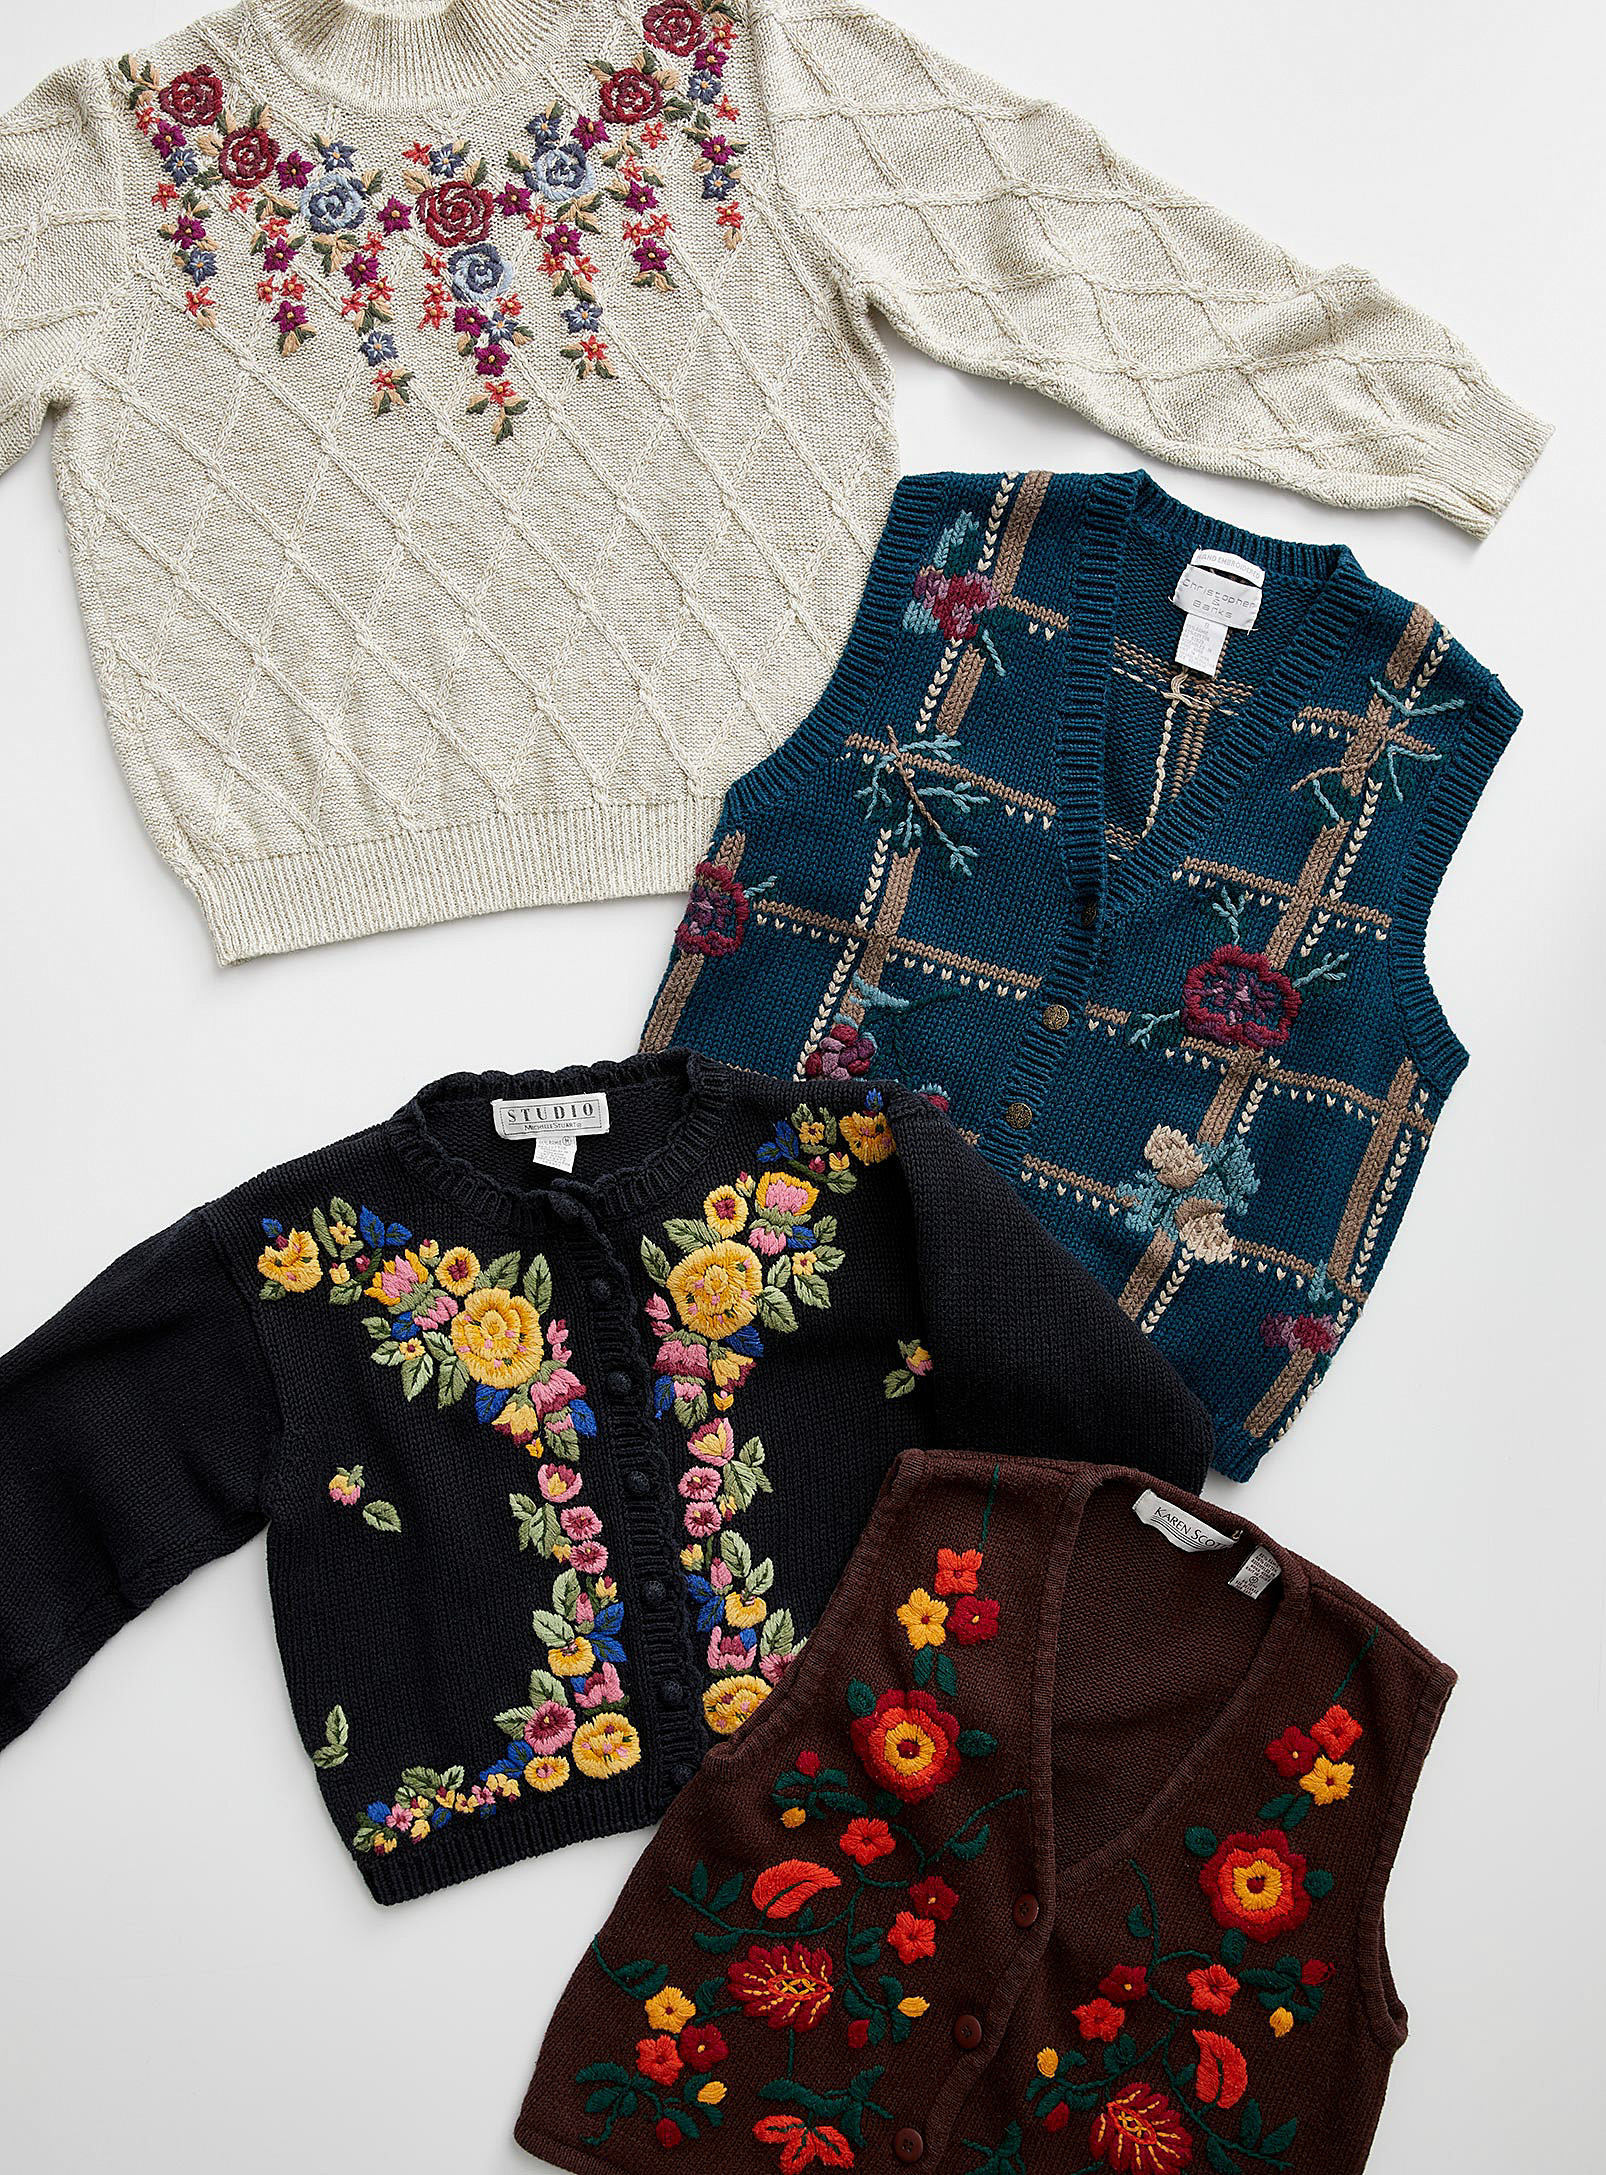 Twik - Women's Floral embroidery sweaters Archives - Unique vintage pieces